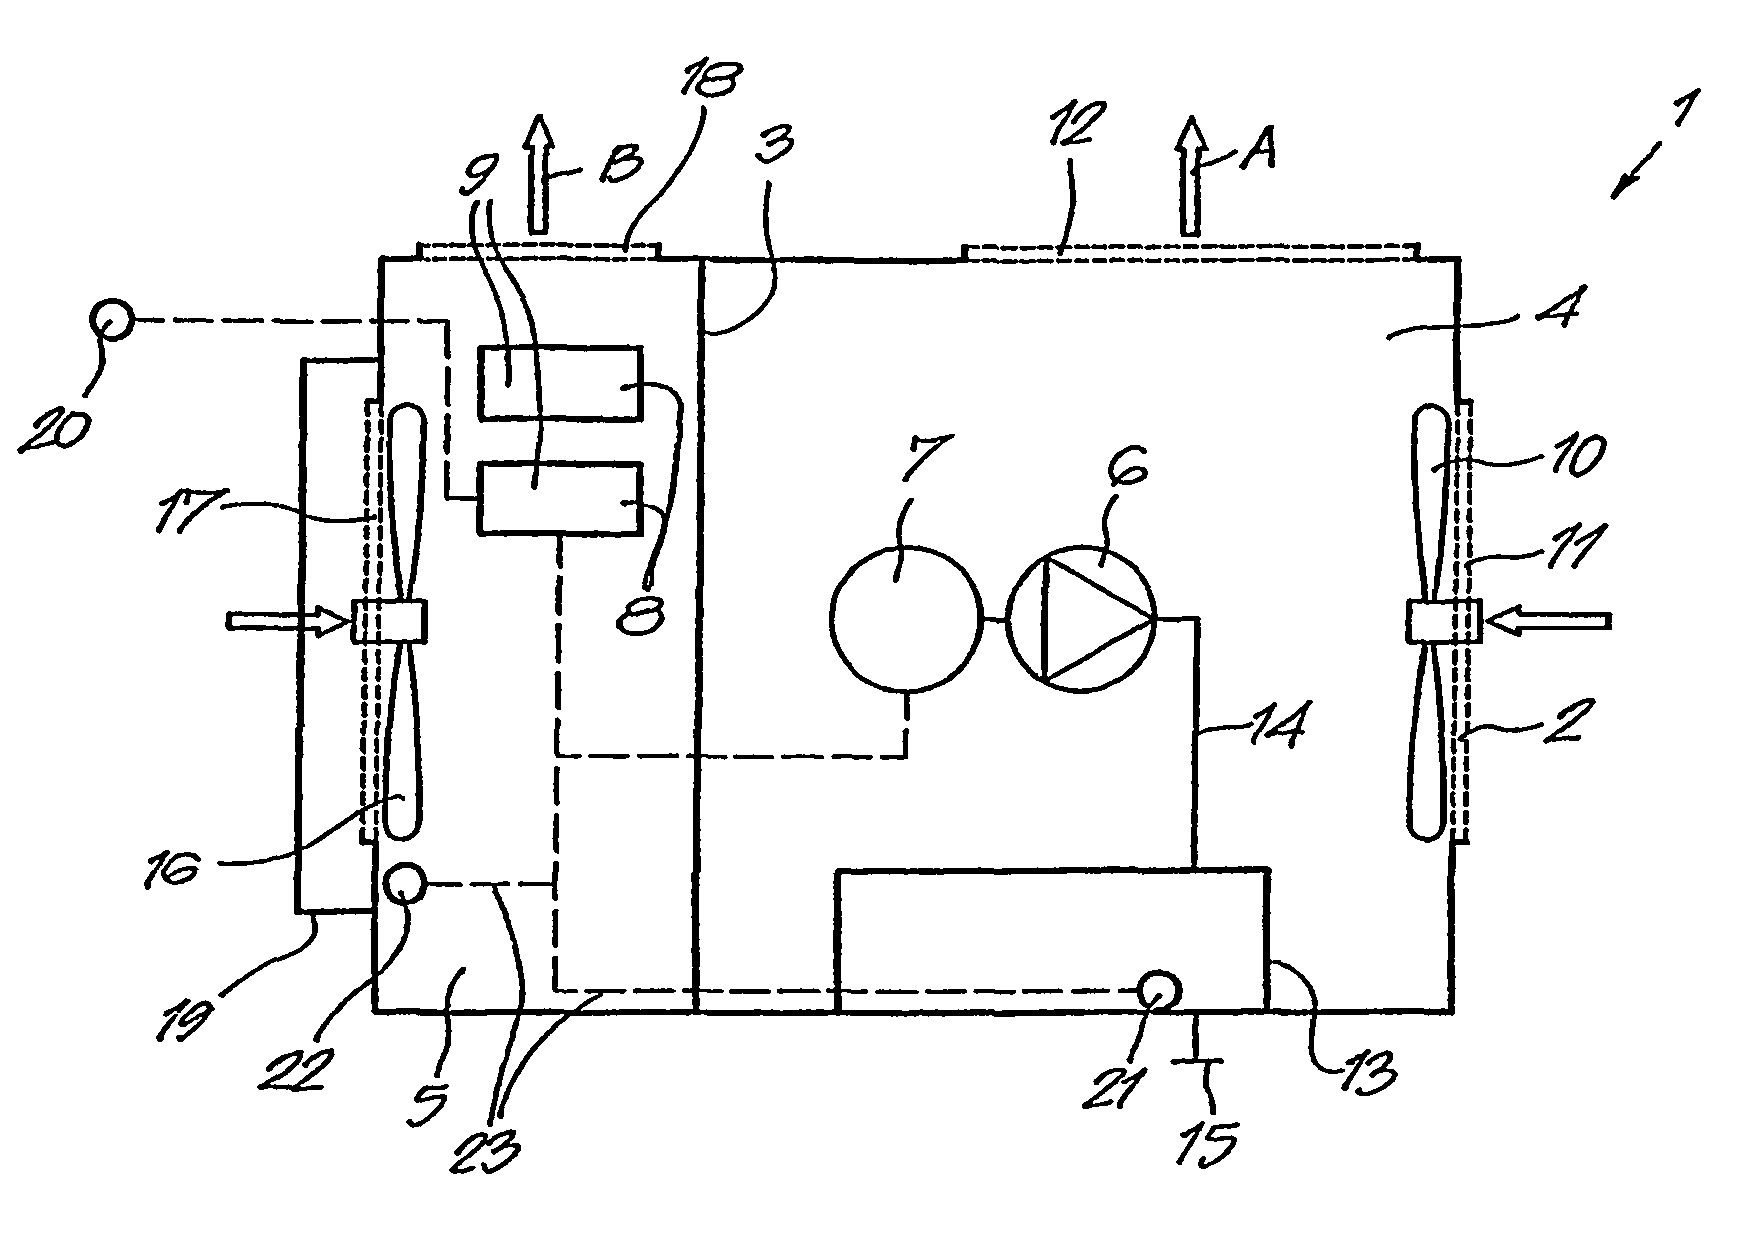 Compressor device